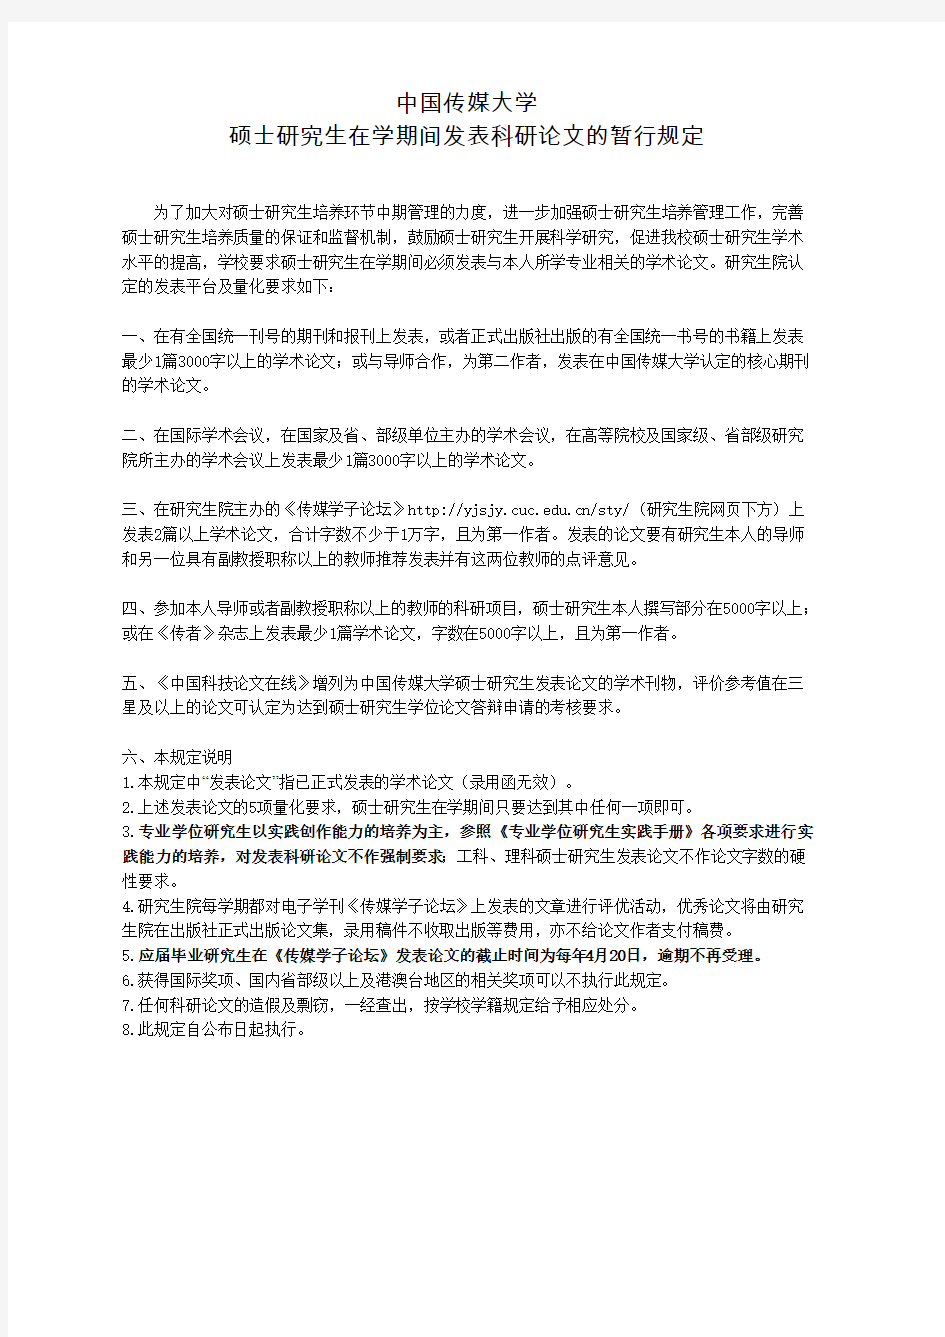 中国传媒大学硕士研究生在学期间发表科研论文的暂行规定